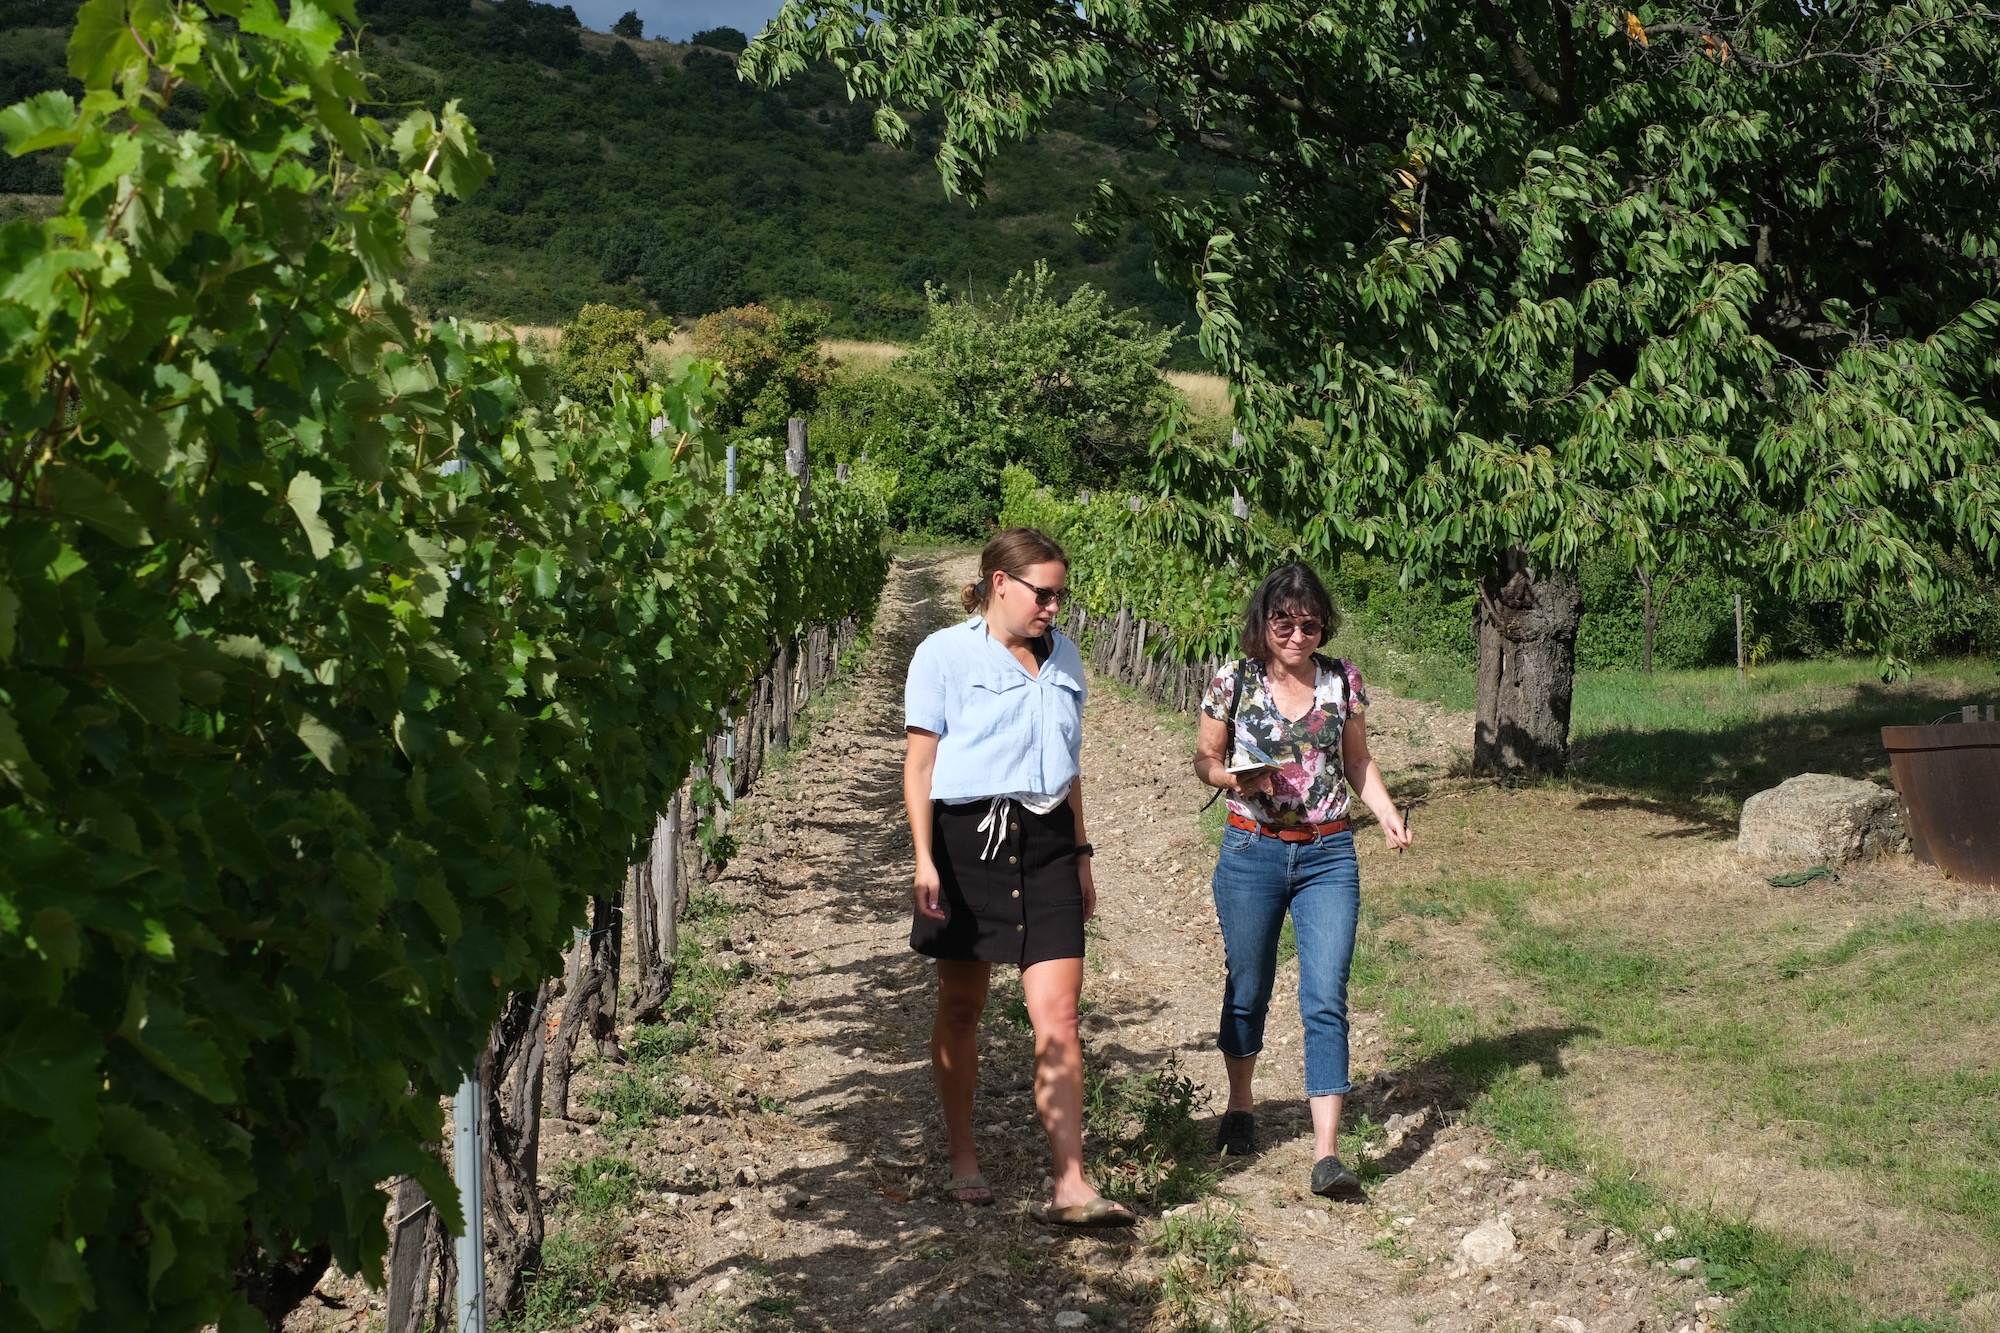 walking in the vineyard